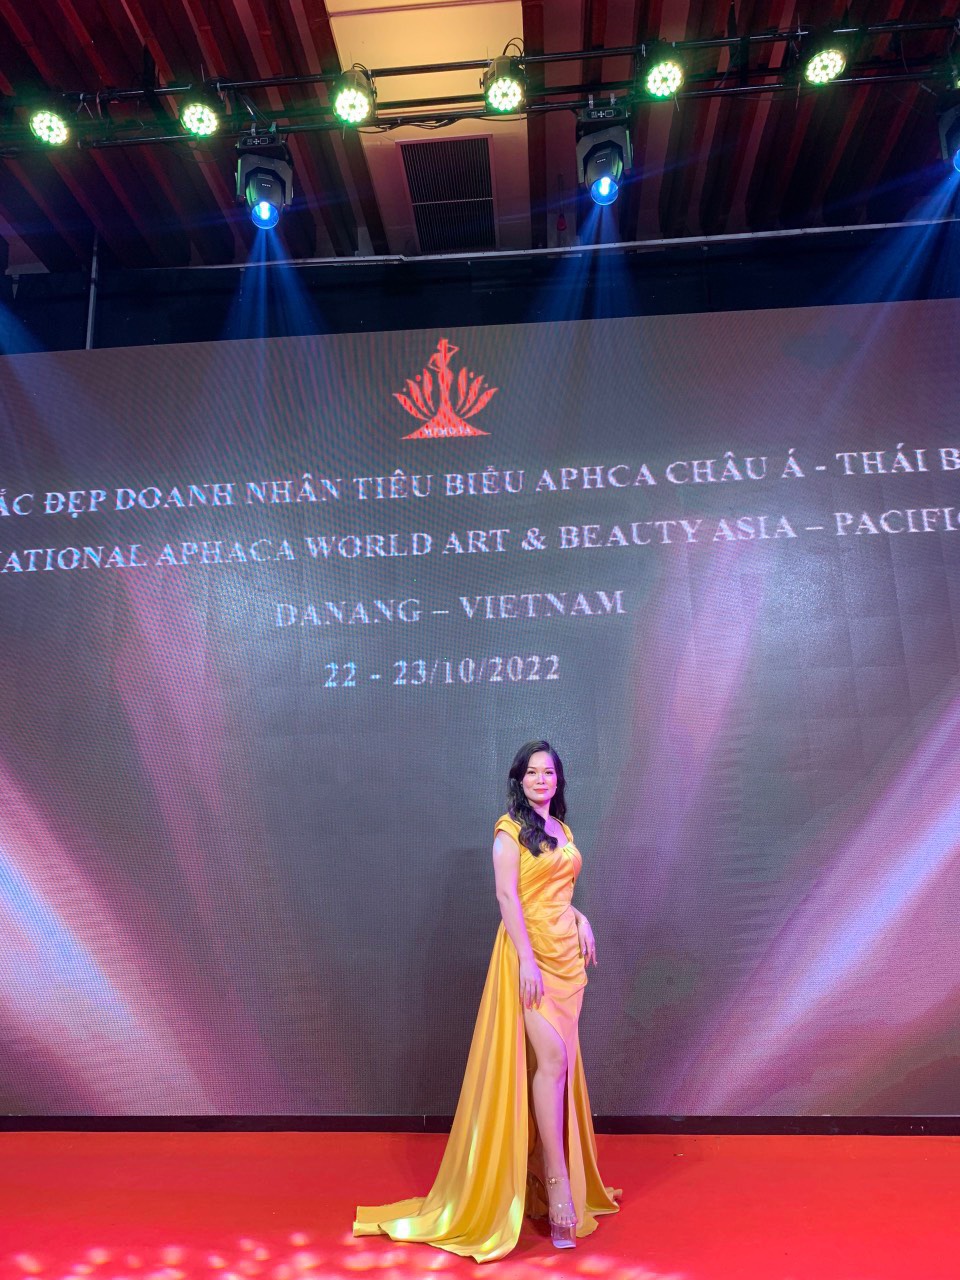 Và thẩm mỹ HANA là một trong những thương hiệu nổi bật trong lĩnh vực làm đẹp với hơn 5 năm hình thành và phát triển, xây dựng mạng lưới hệ thống dịch vụ đa dạng và hoạt động chính thống dưới sự cấp phép của Sở Y Tế HẢI PHÒNG. Tự hào khi trở thành địa chỉ đáng tin cậy giúp chị em khắc phục khuyết điểm và nâng tầm nhan sắc Việt.